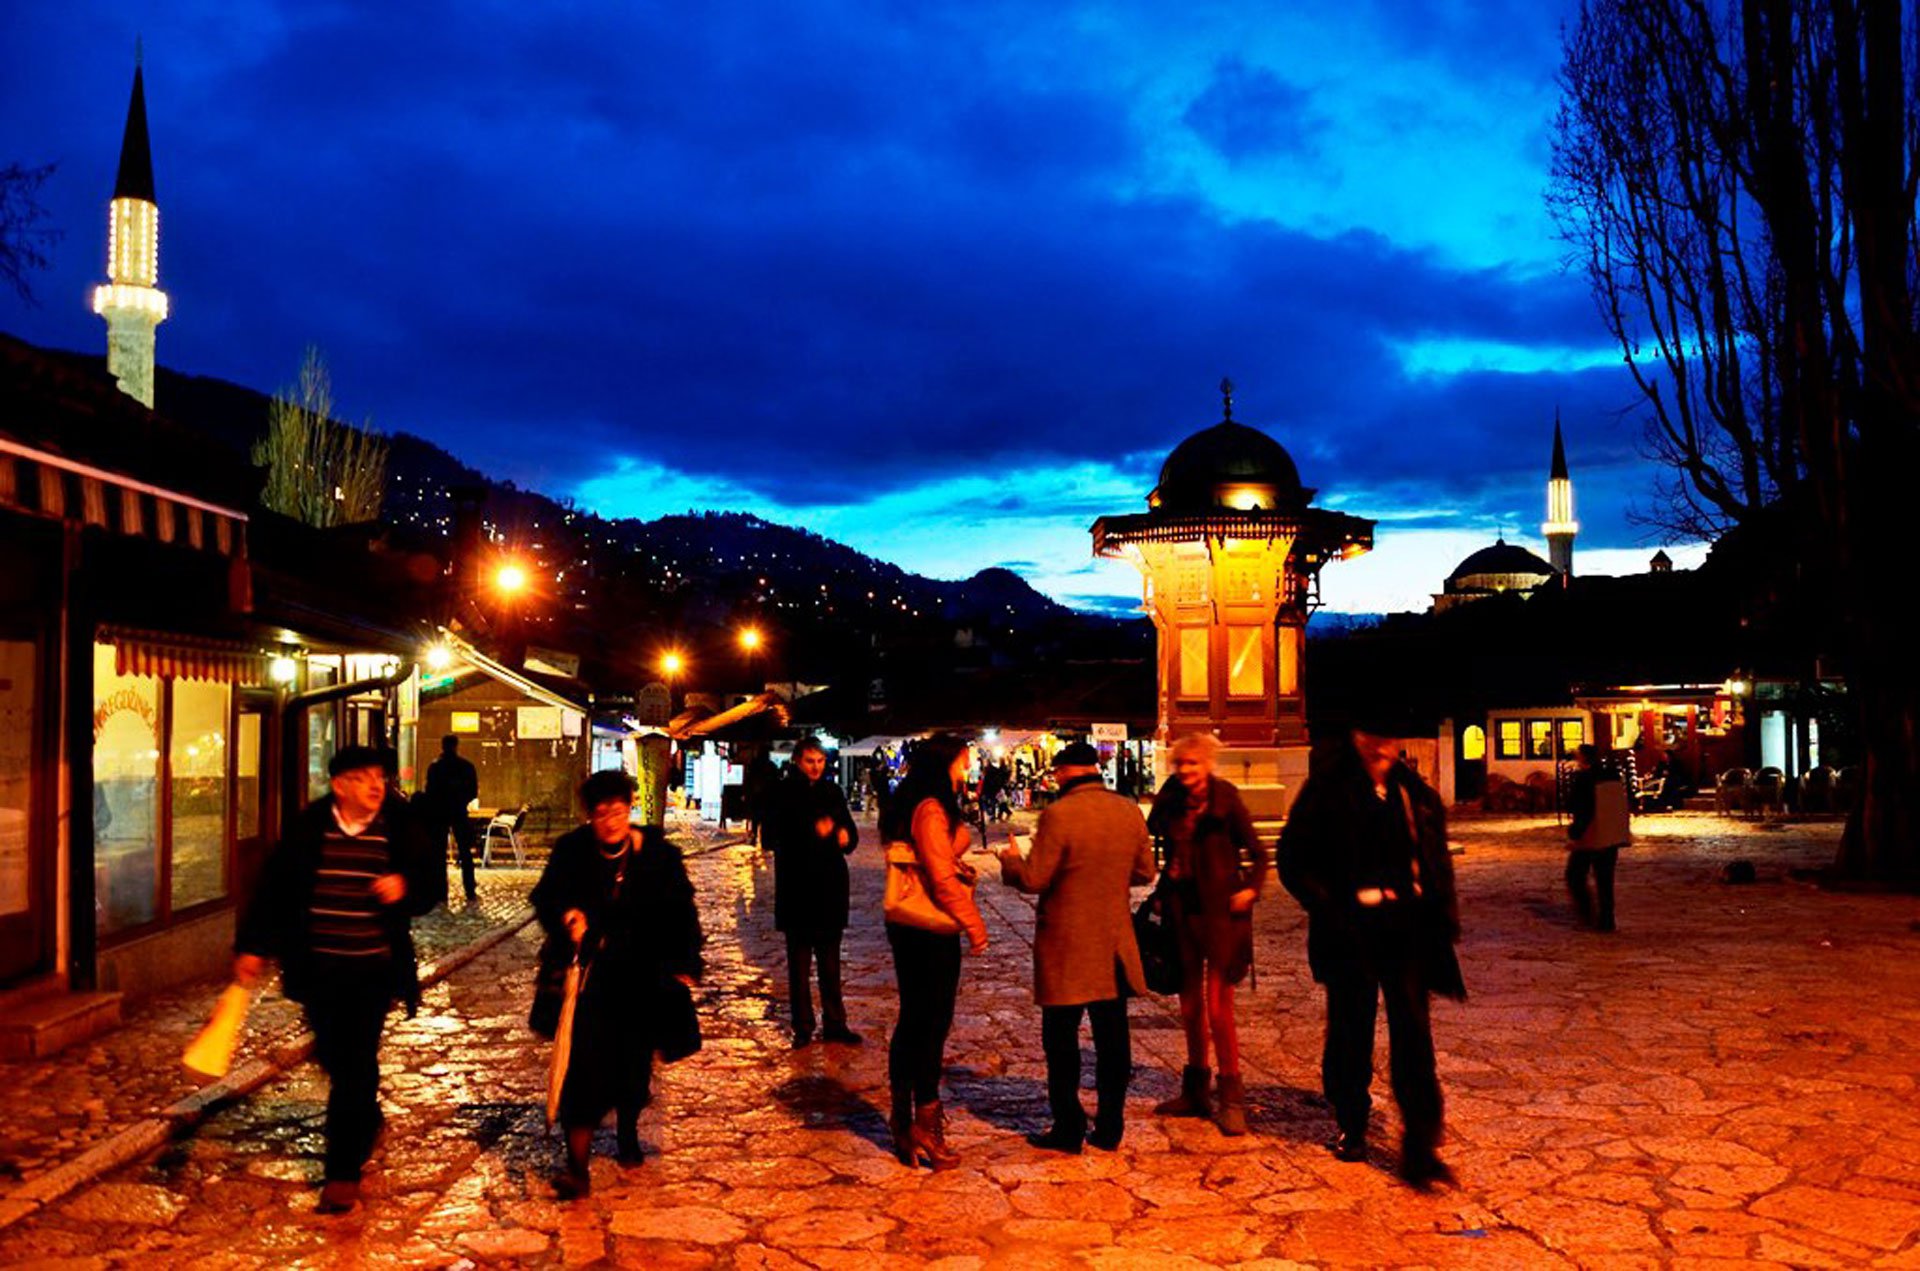 جشنواره های هنری و رنگارنگ بوسنی